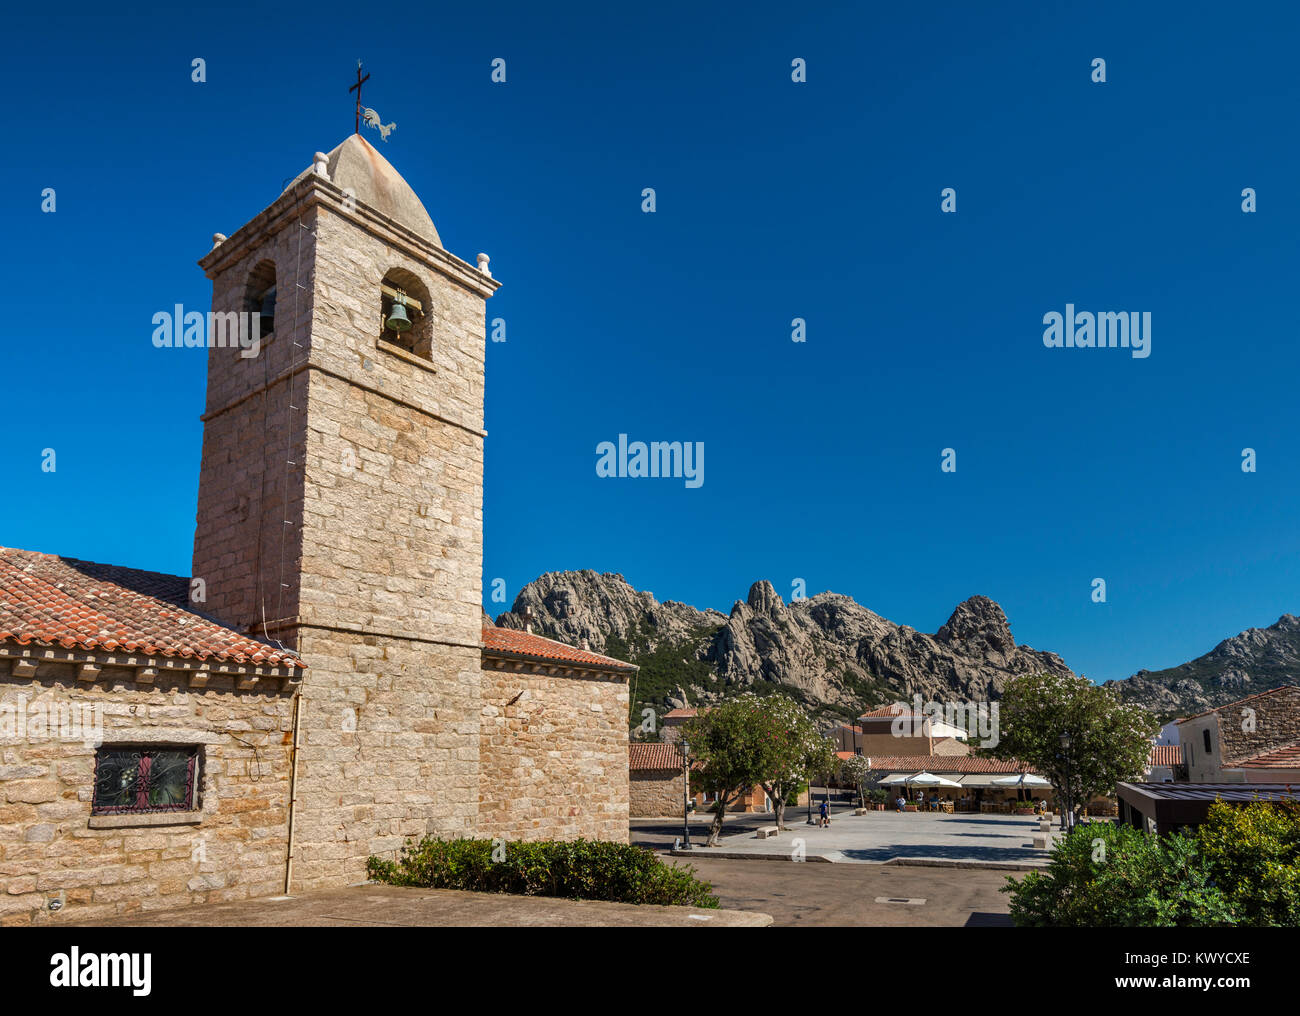 Chiesa di San Pantaleo, church in village of San Pantaleo, near Arzachena and Costa Smeralda, Sardinia, Italy Stock Photo